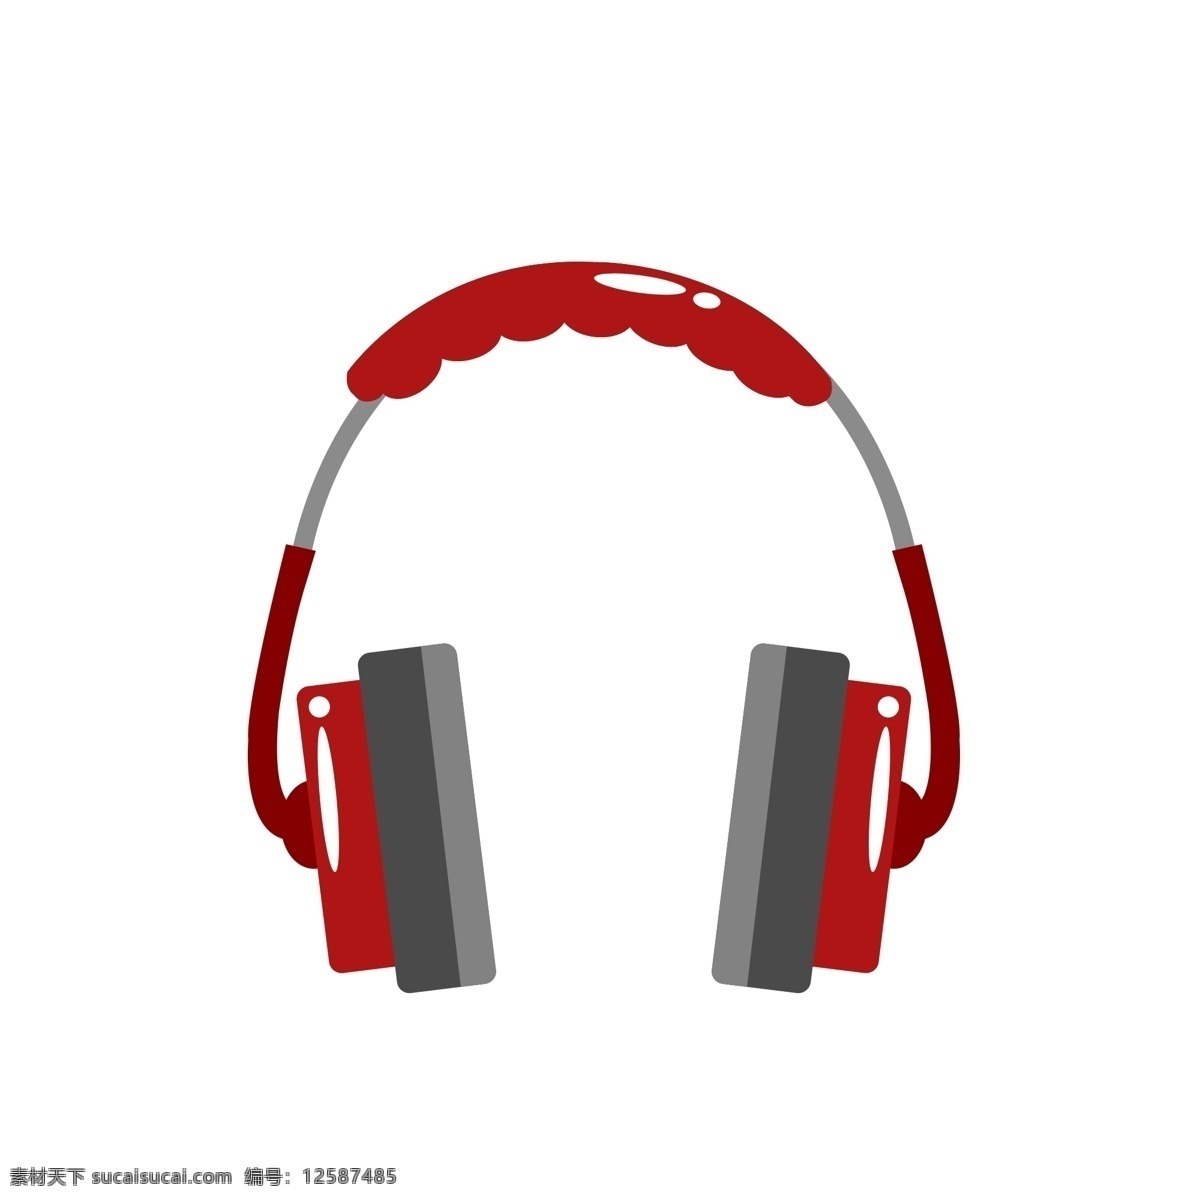 红色 音乐 耳机 插画 红色的耳机 卡通插画 乐器插画 音乐插画 演奏乐器 音乐器具 听歌的耳机